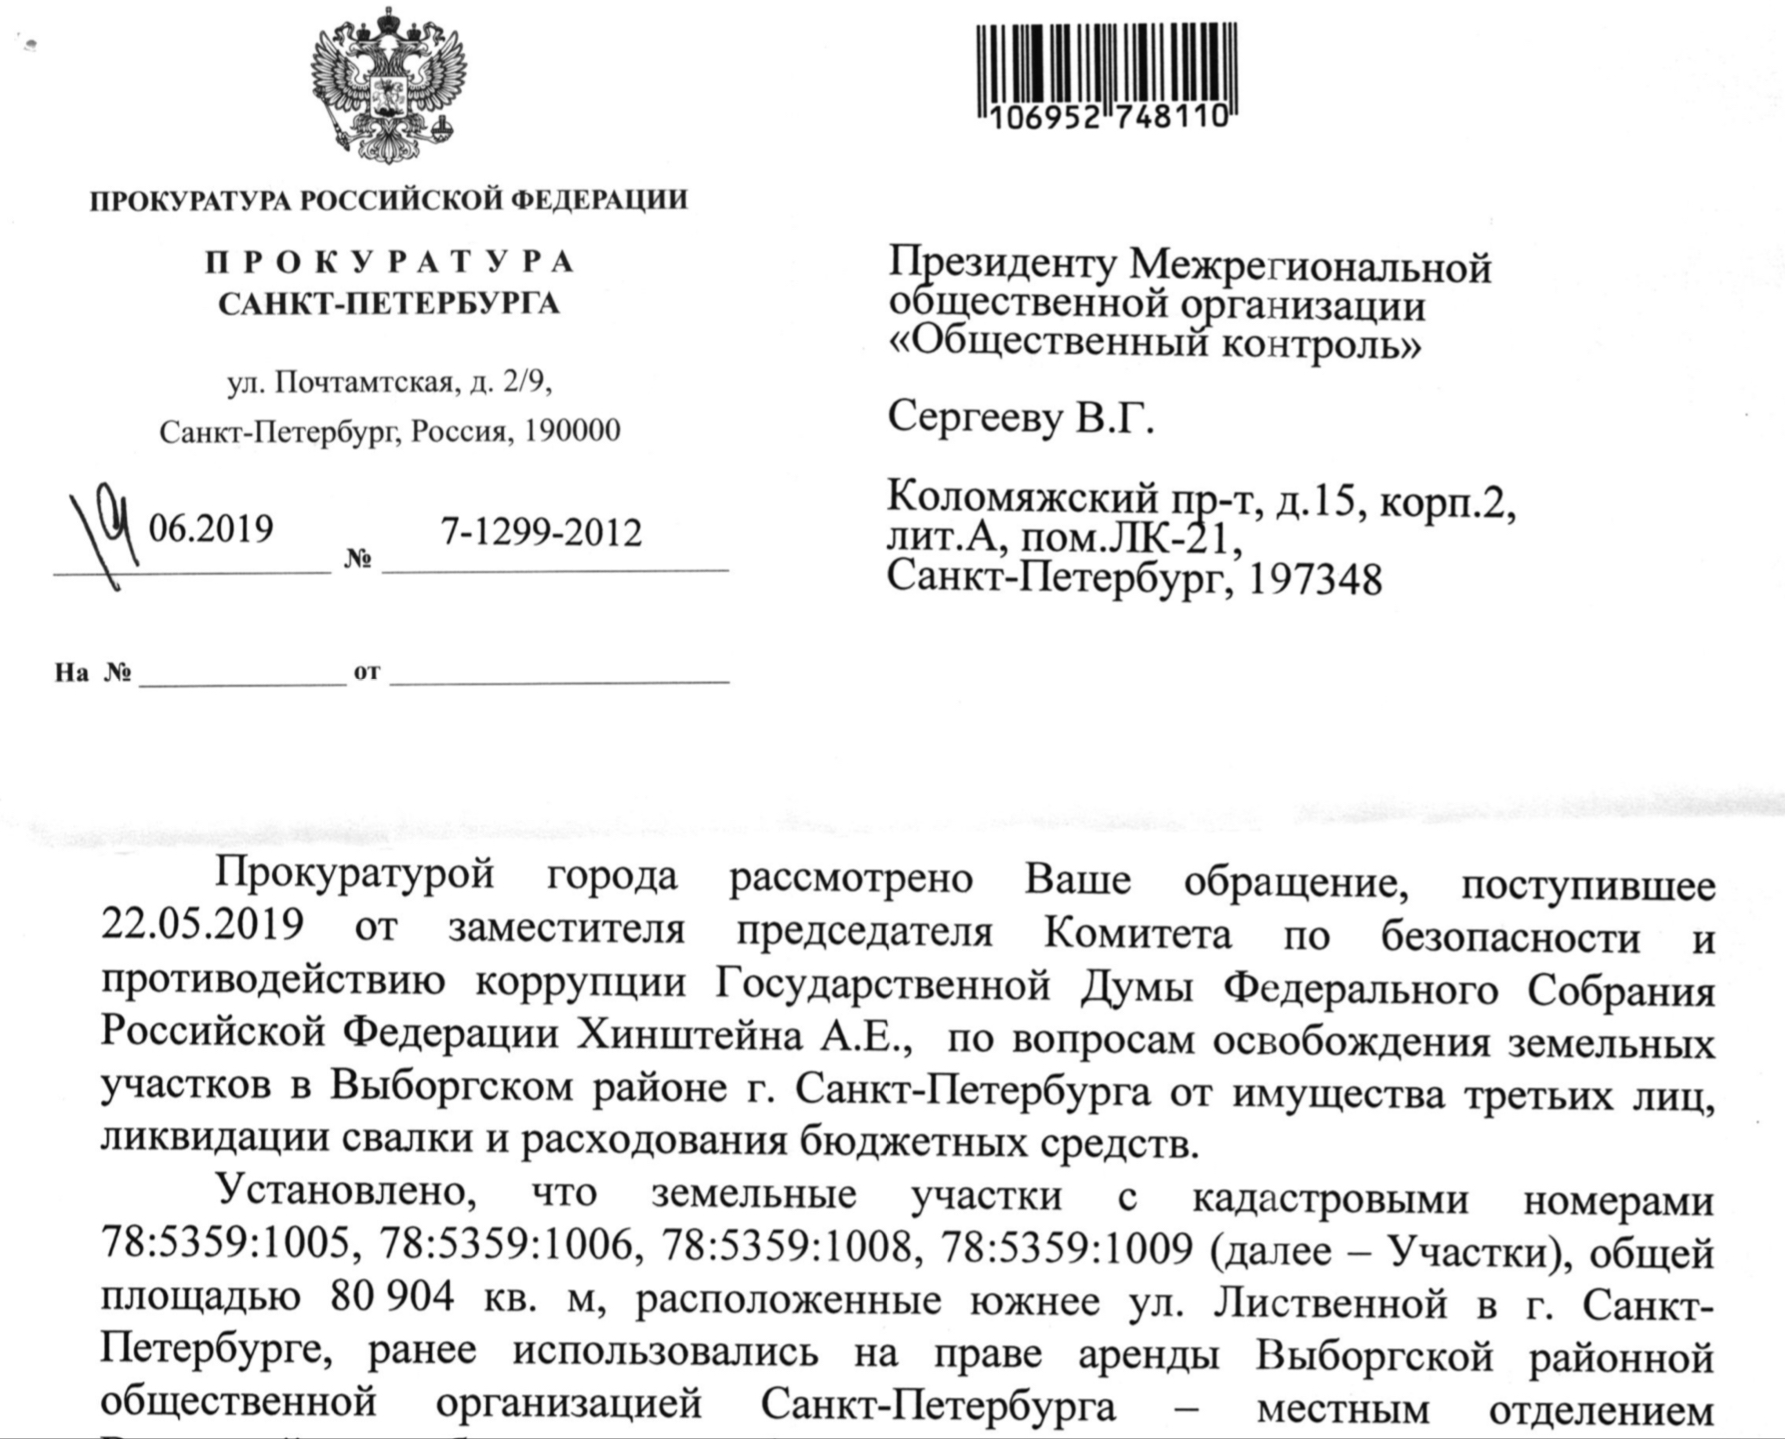 Ответ Прокуратуры на обращение по вопросу ликвидации свалки в парке Сосновка и расходованию бюджетных средств.